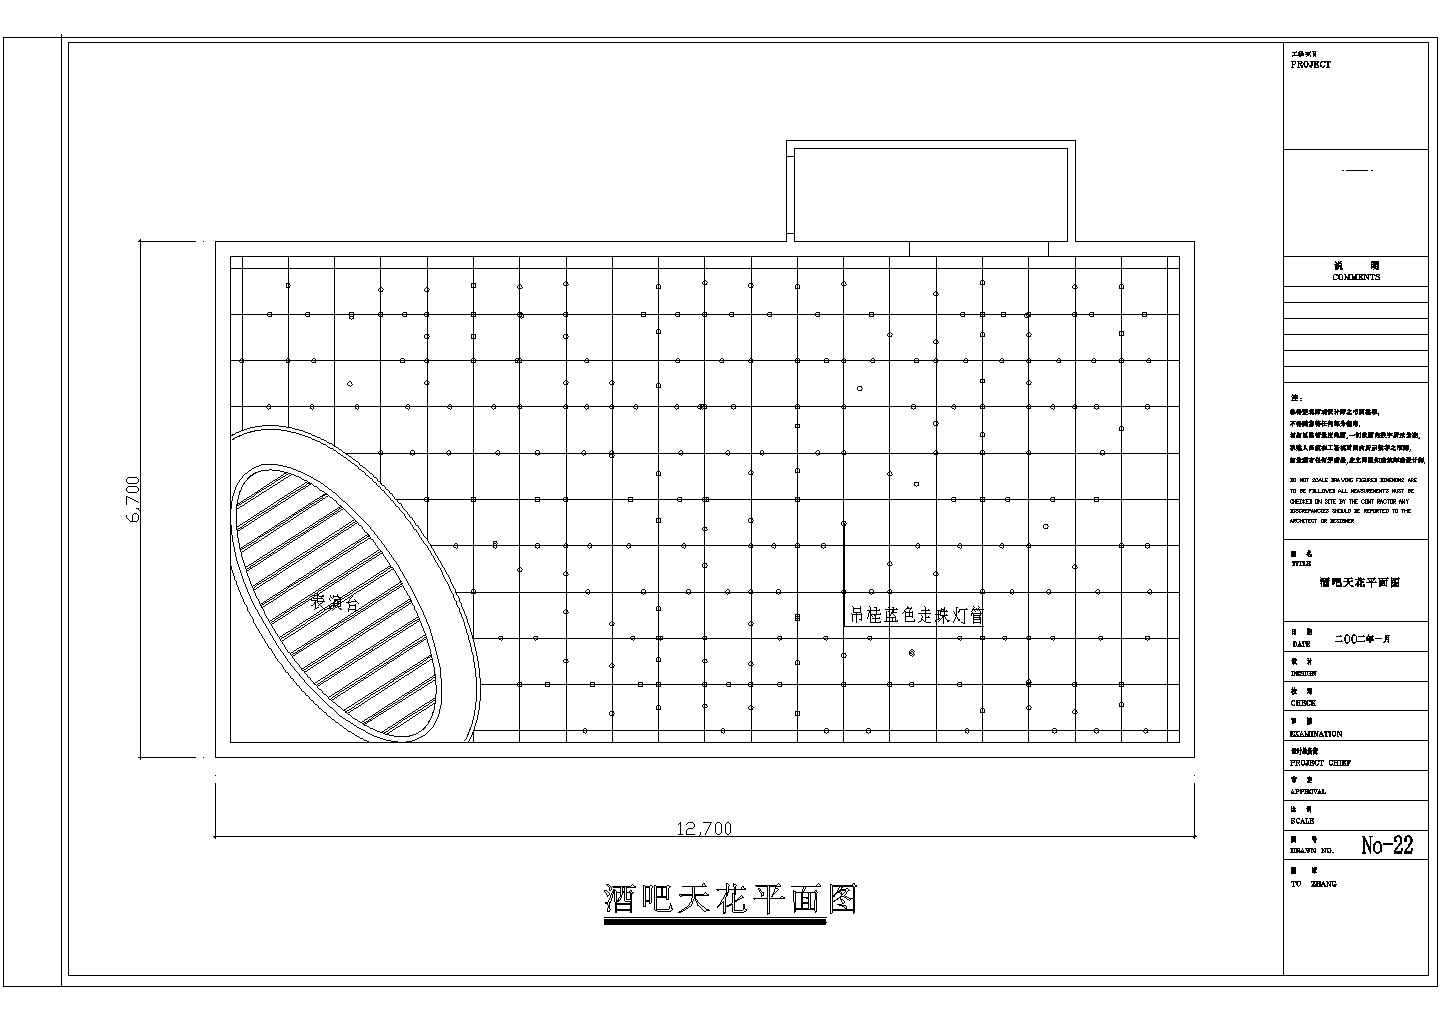 【南京】浦口区某酒吧全套装修施工设计cad图纸